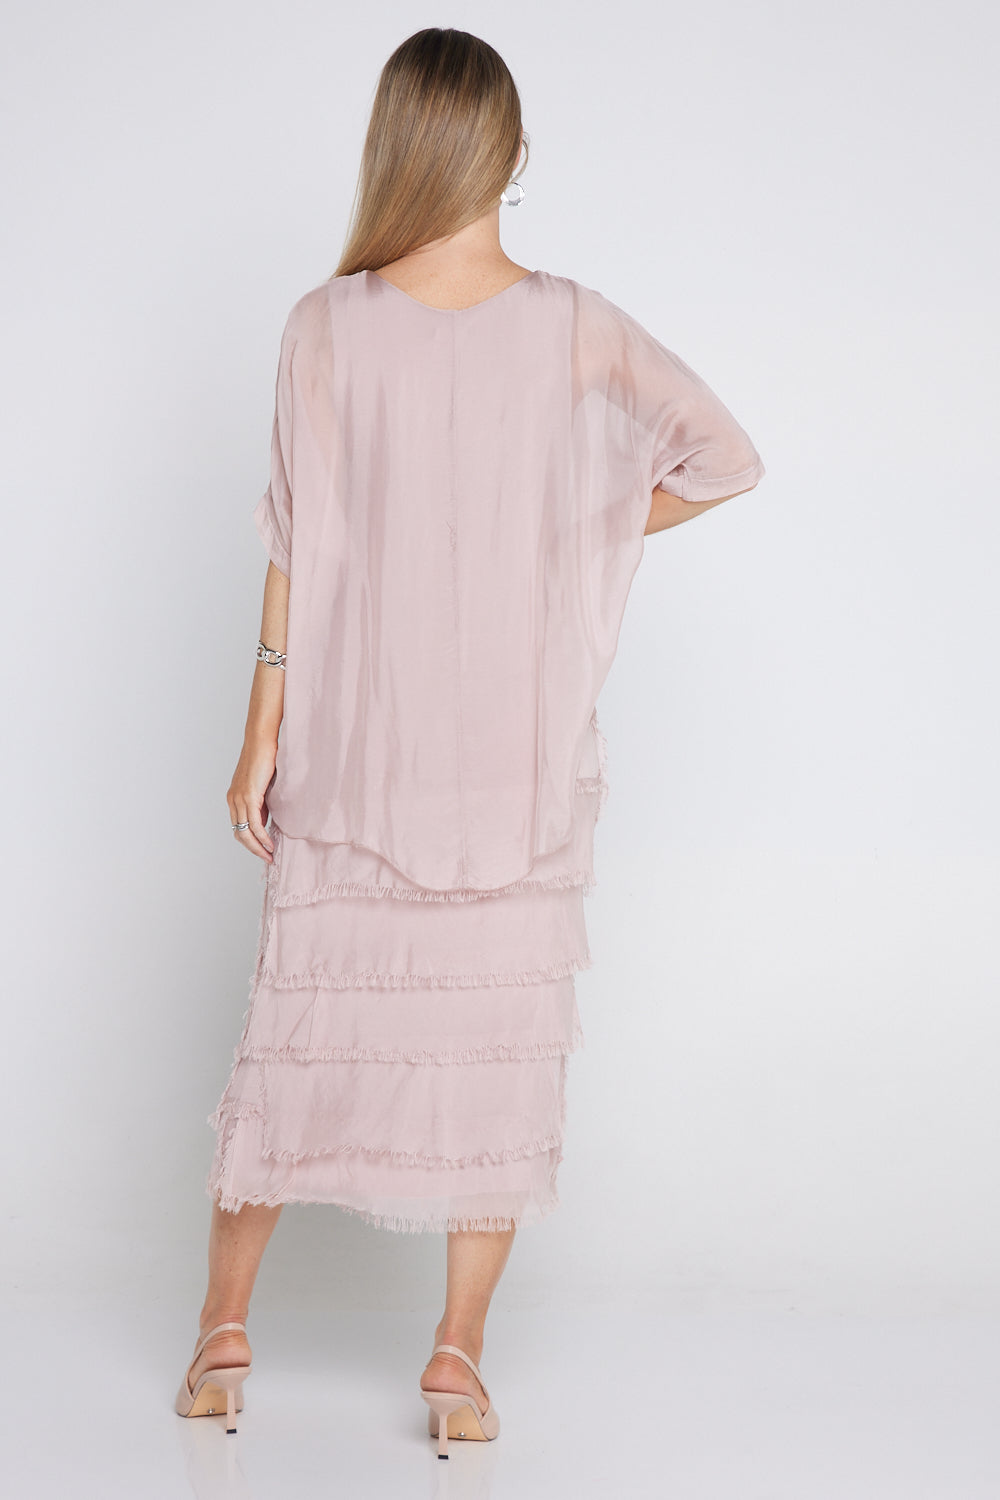 Margo Silk Dress - Blush Pink